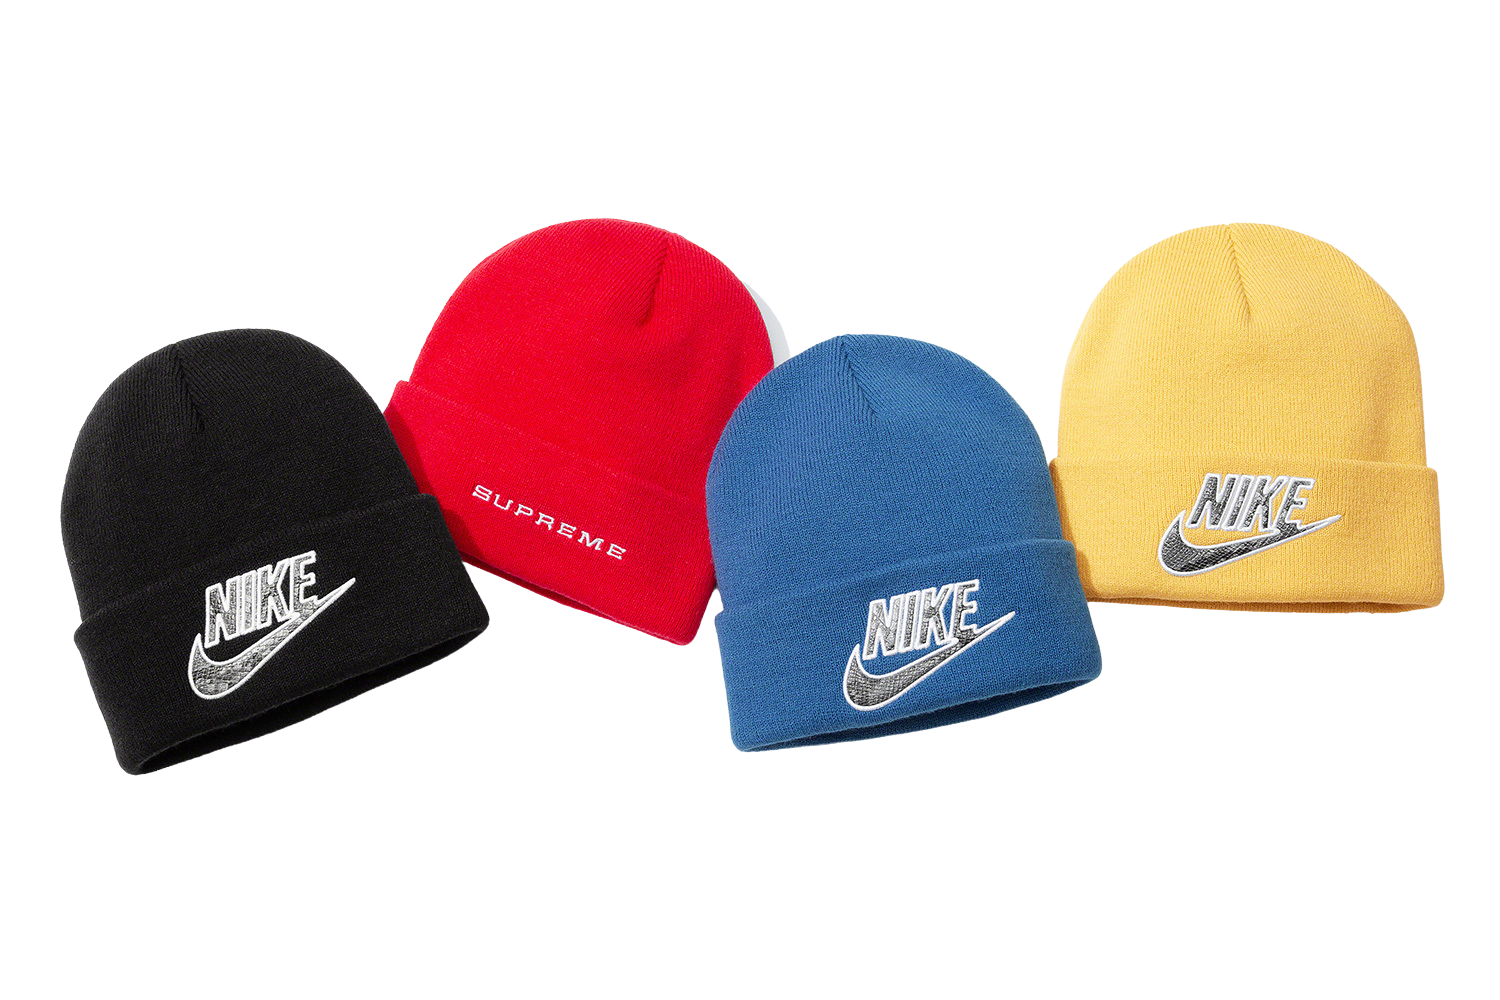 Supreme x Nike Beanie Hat